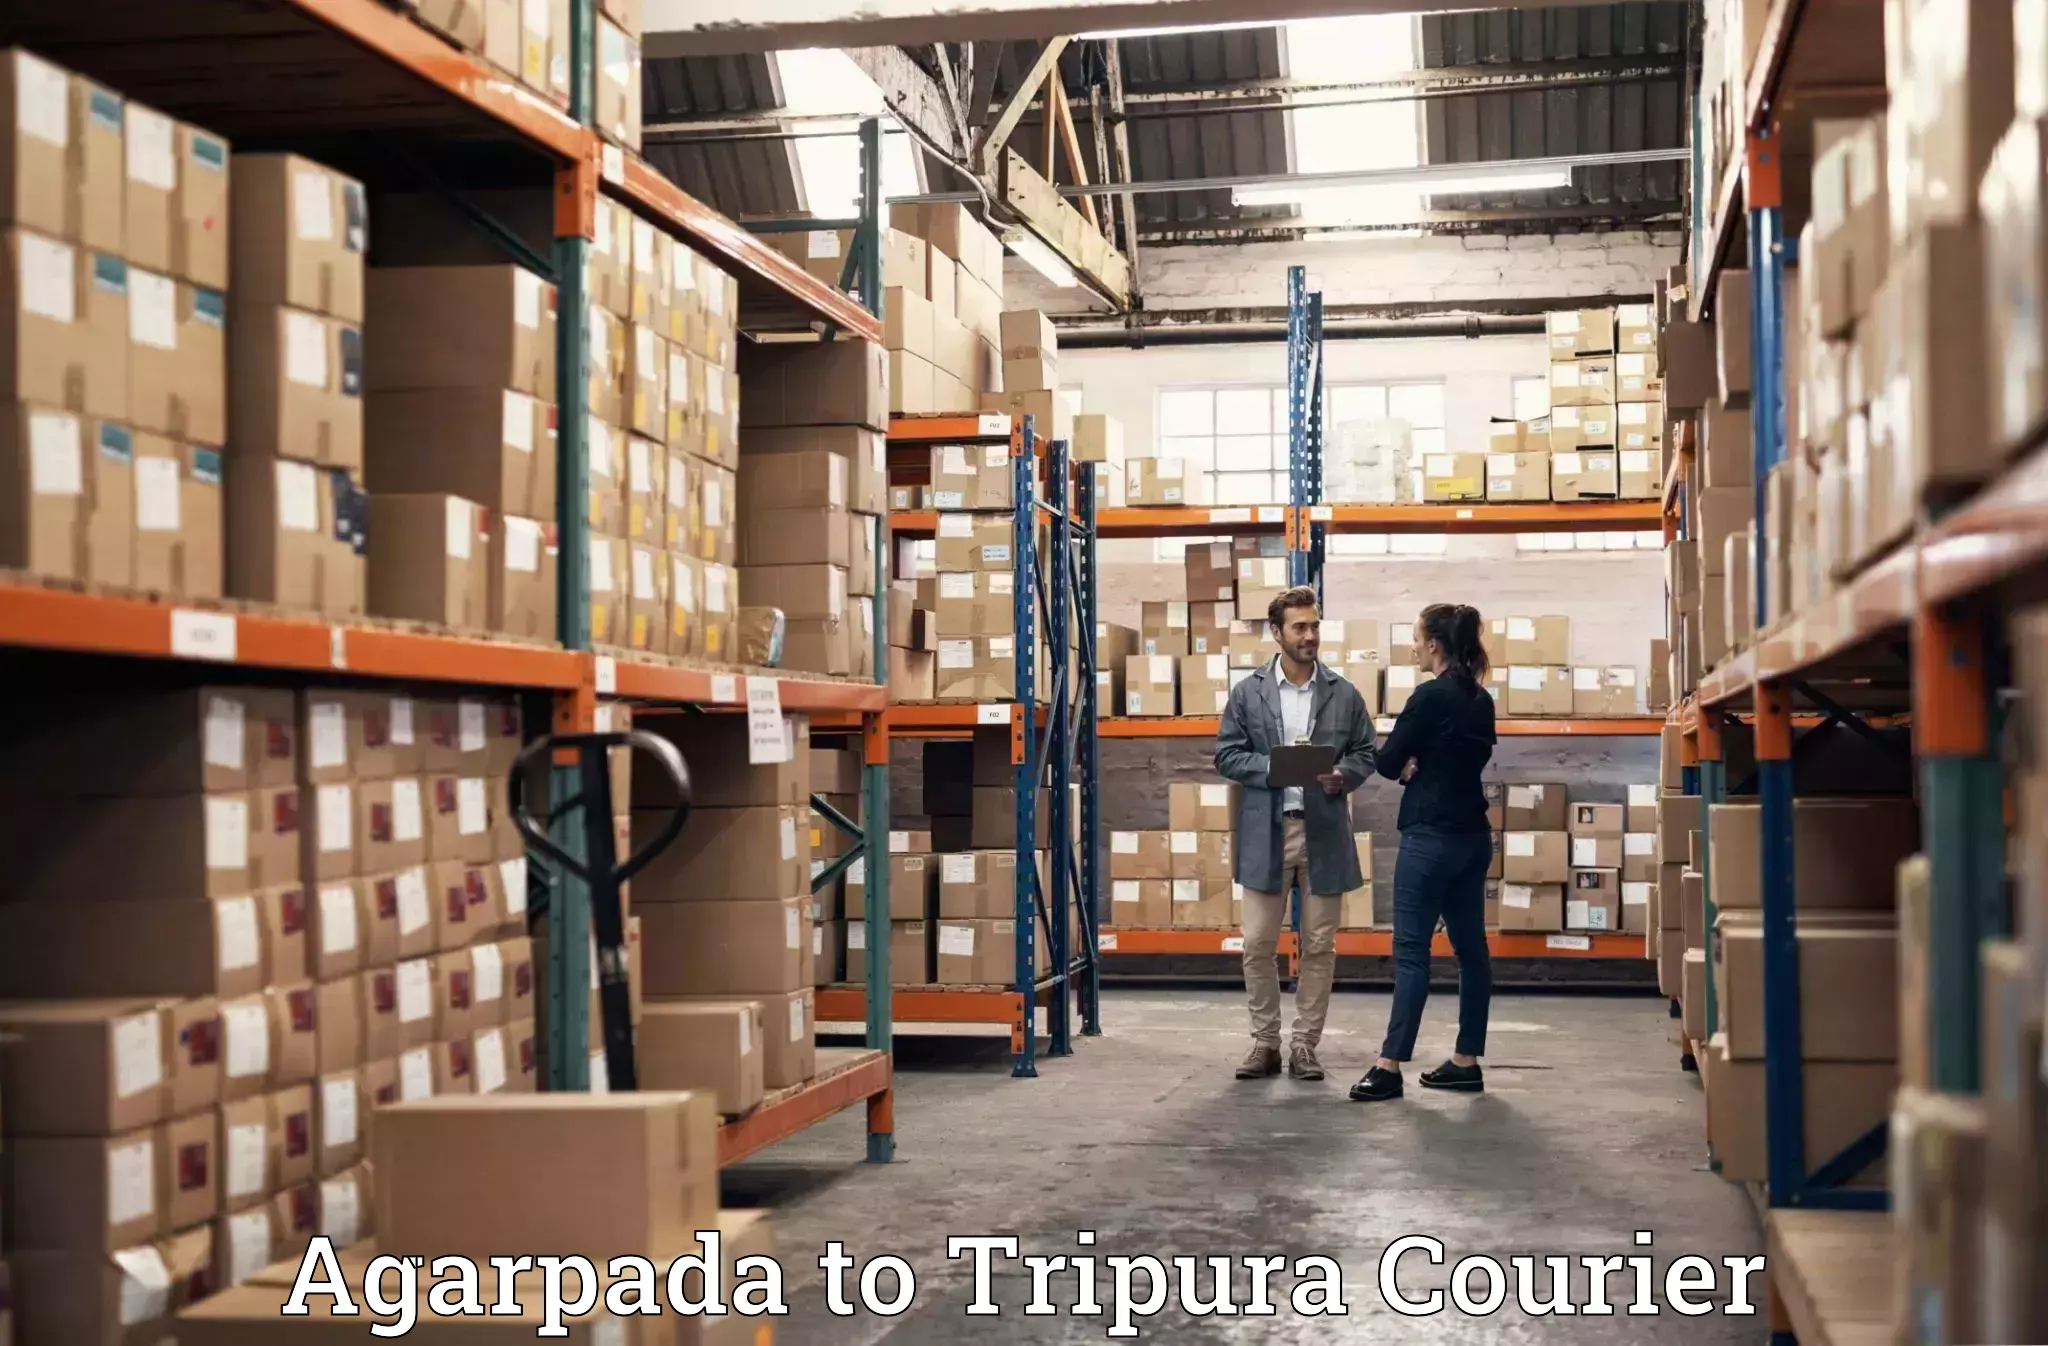 Home shifting experts Agarpada to Tripura